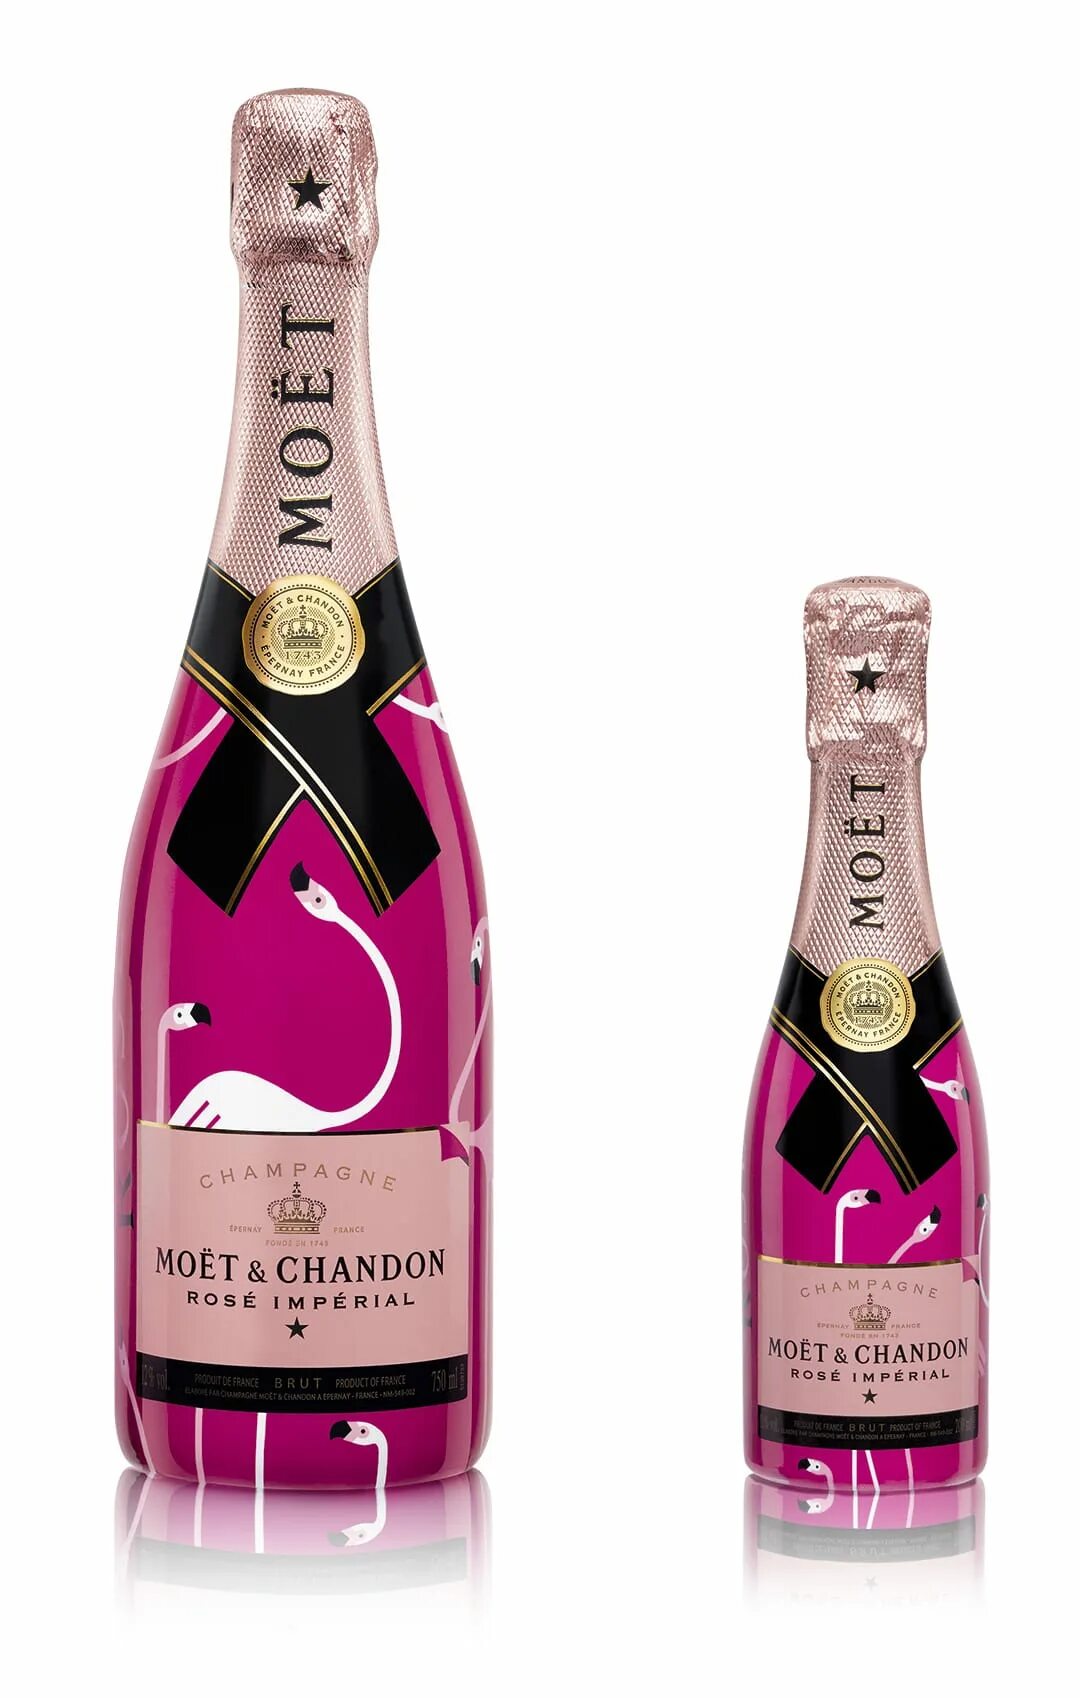 Crystal моет. Moët Chandon Rose. Моёт Chandon Champagne 1743. Moet Rose шампанское. Chandon moët Розэ.